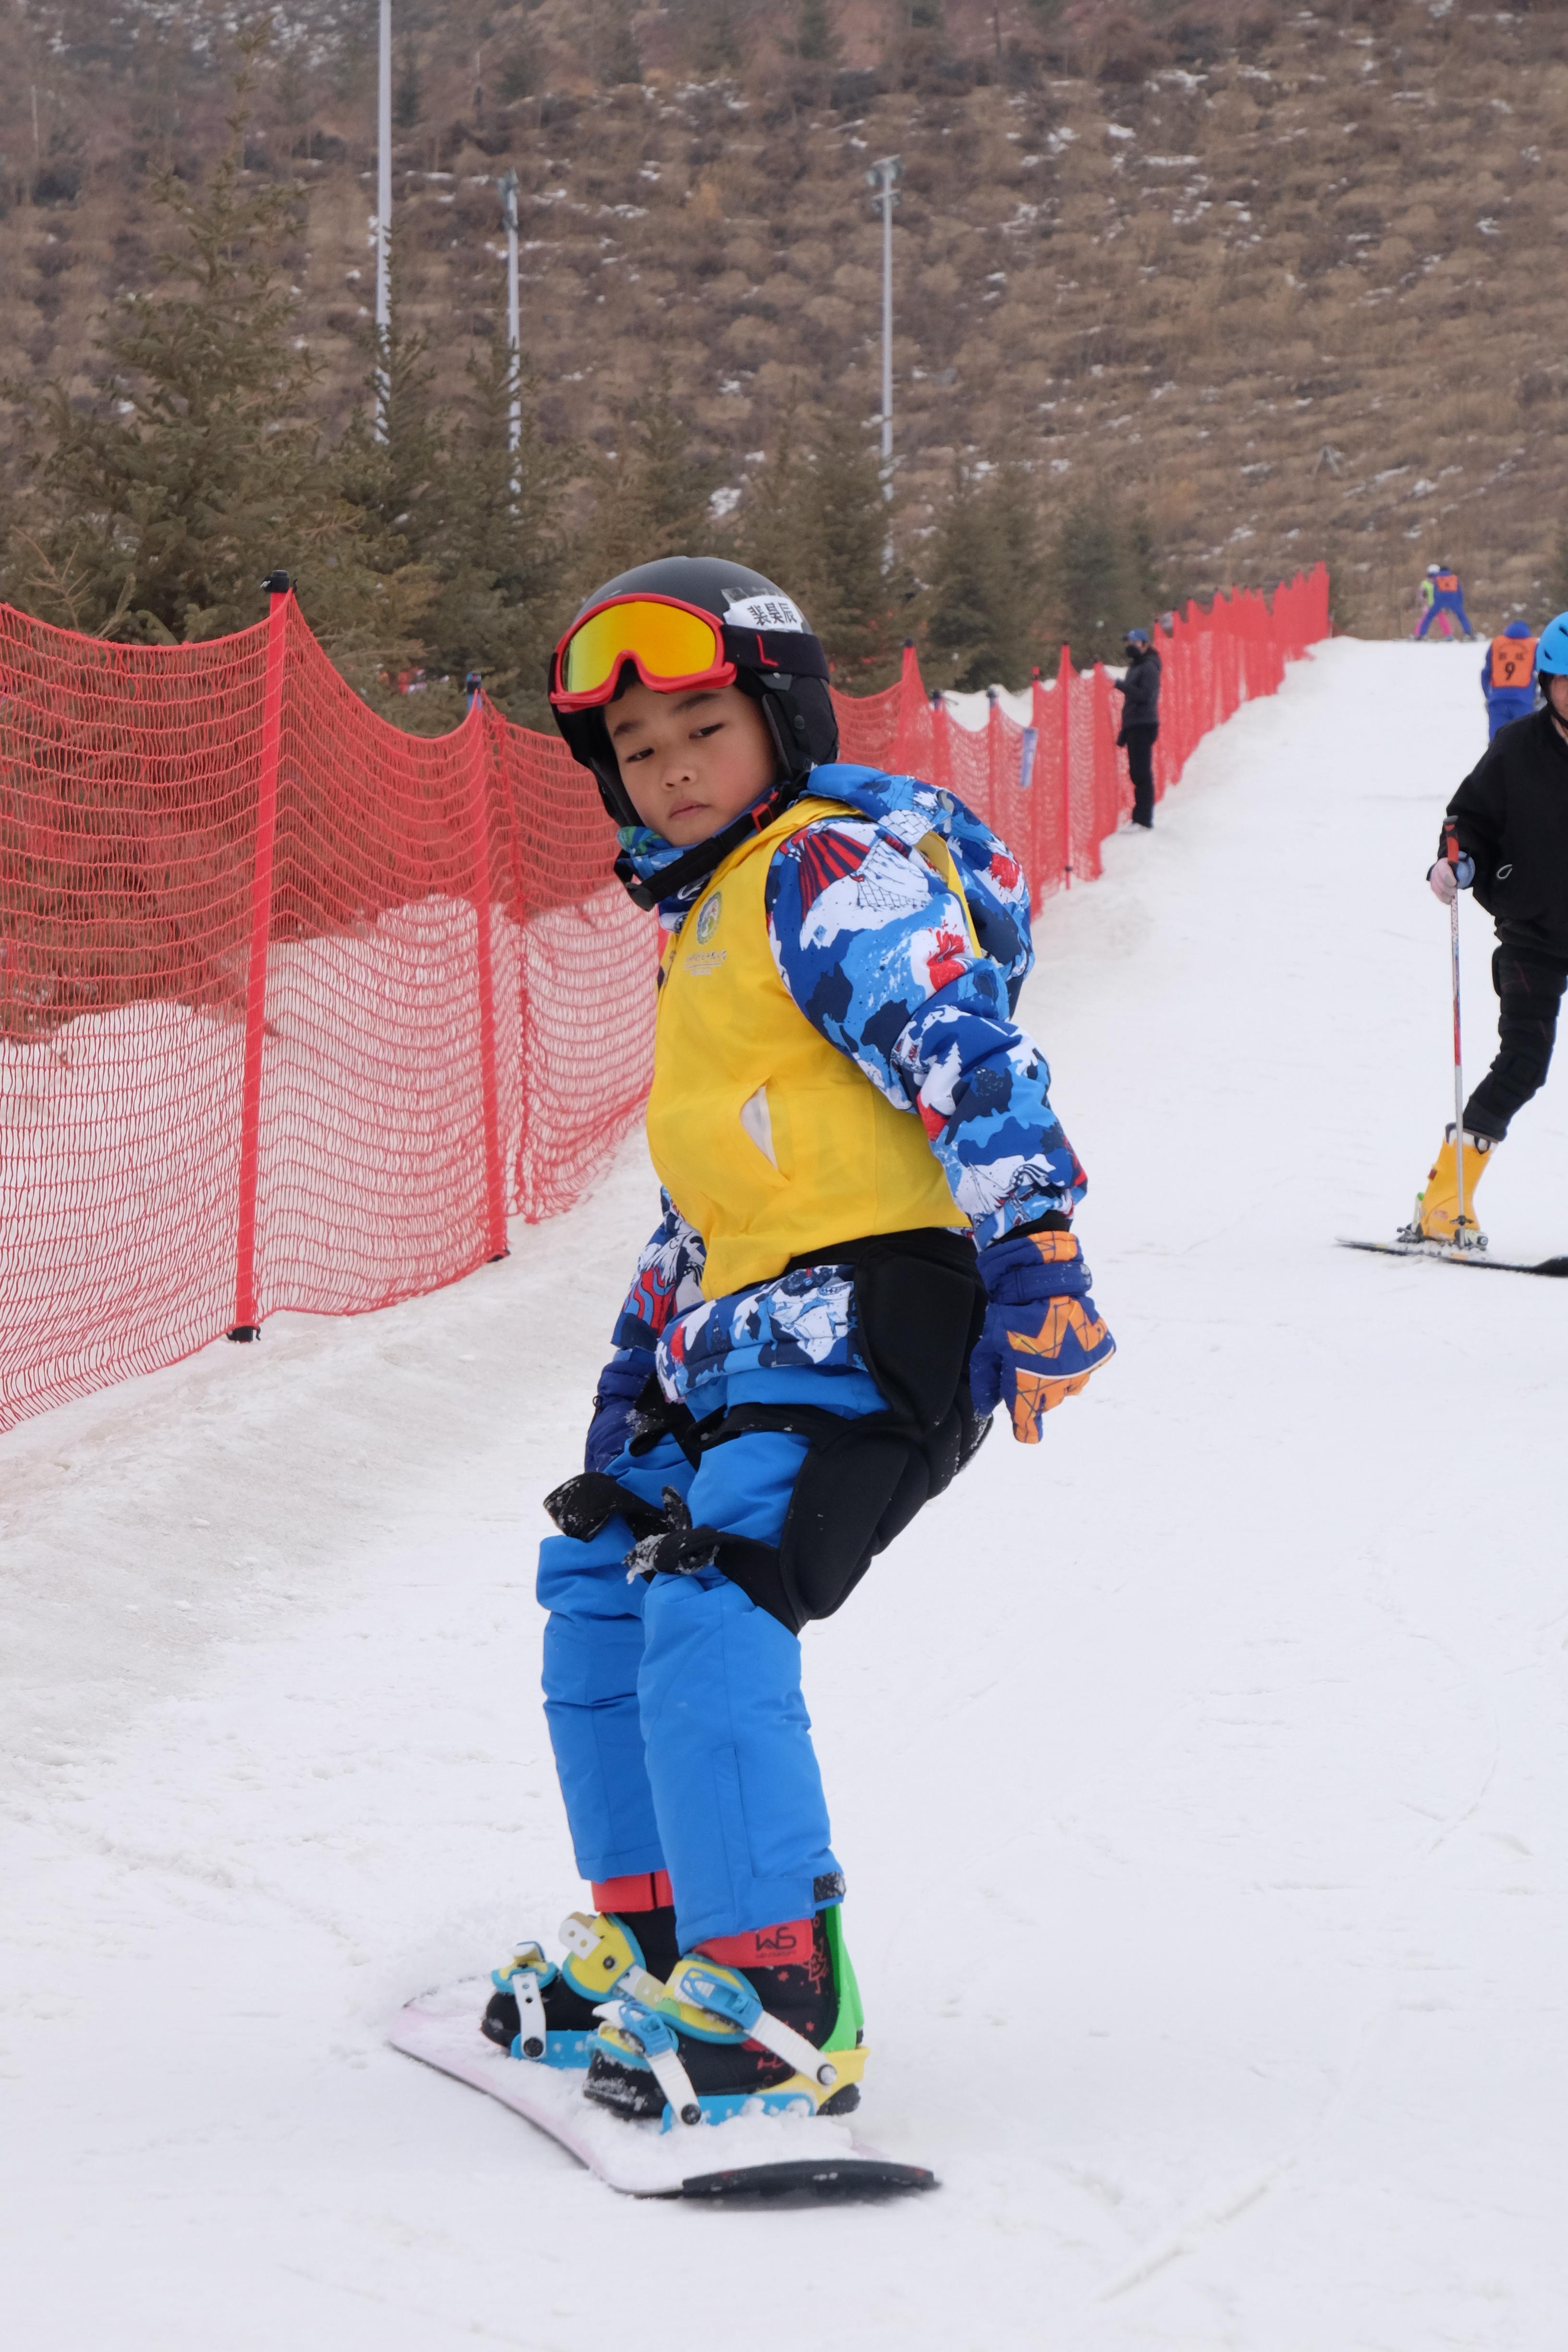 来说兰州市安宁区阳光小学三年级的学生裴昊辰正在滑雪场内练习滑雪